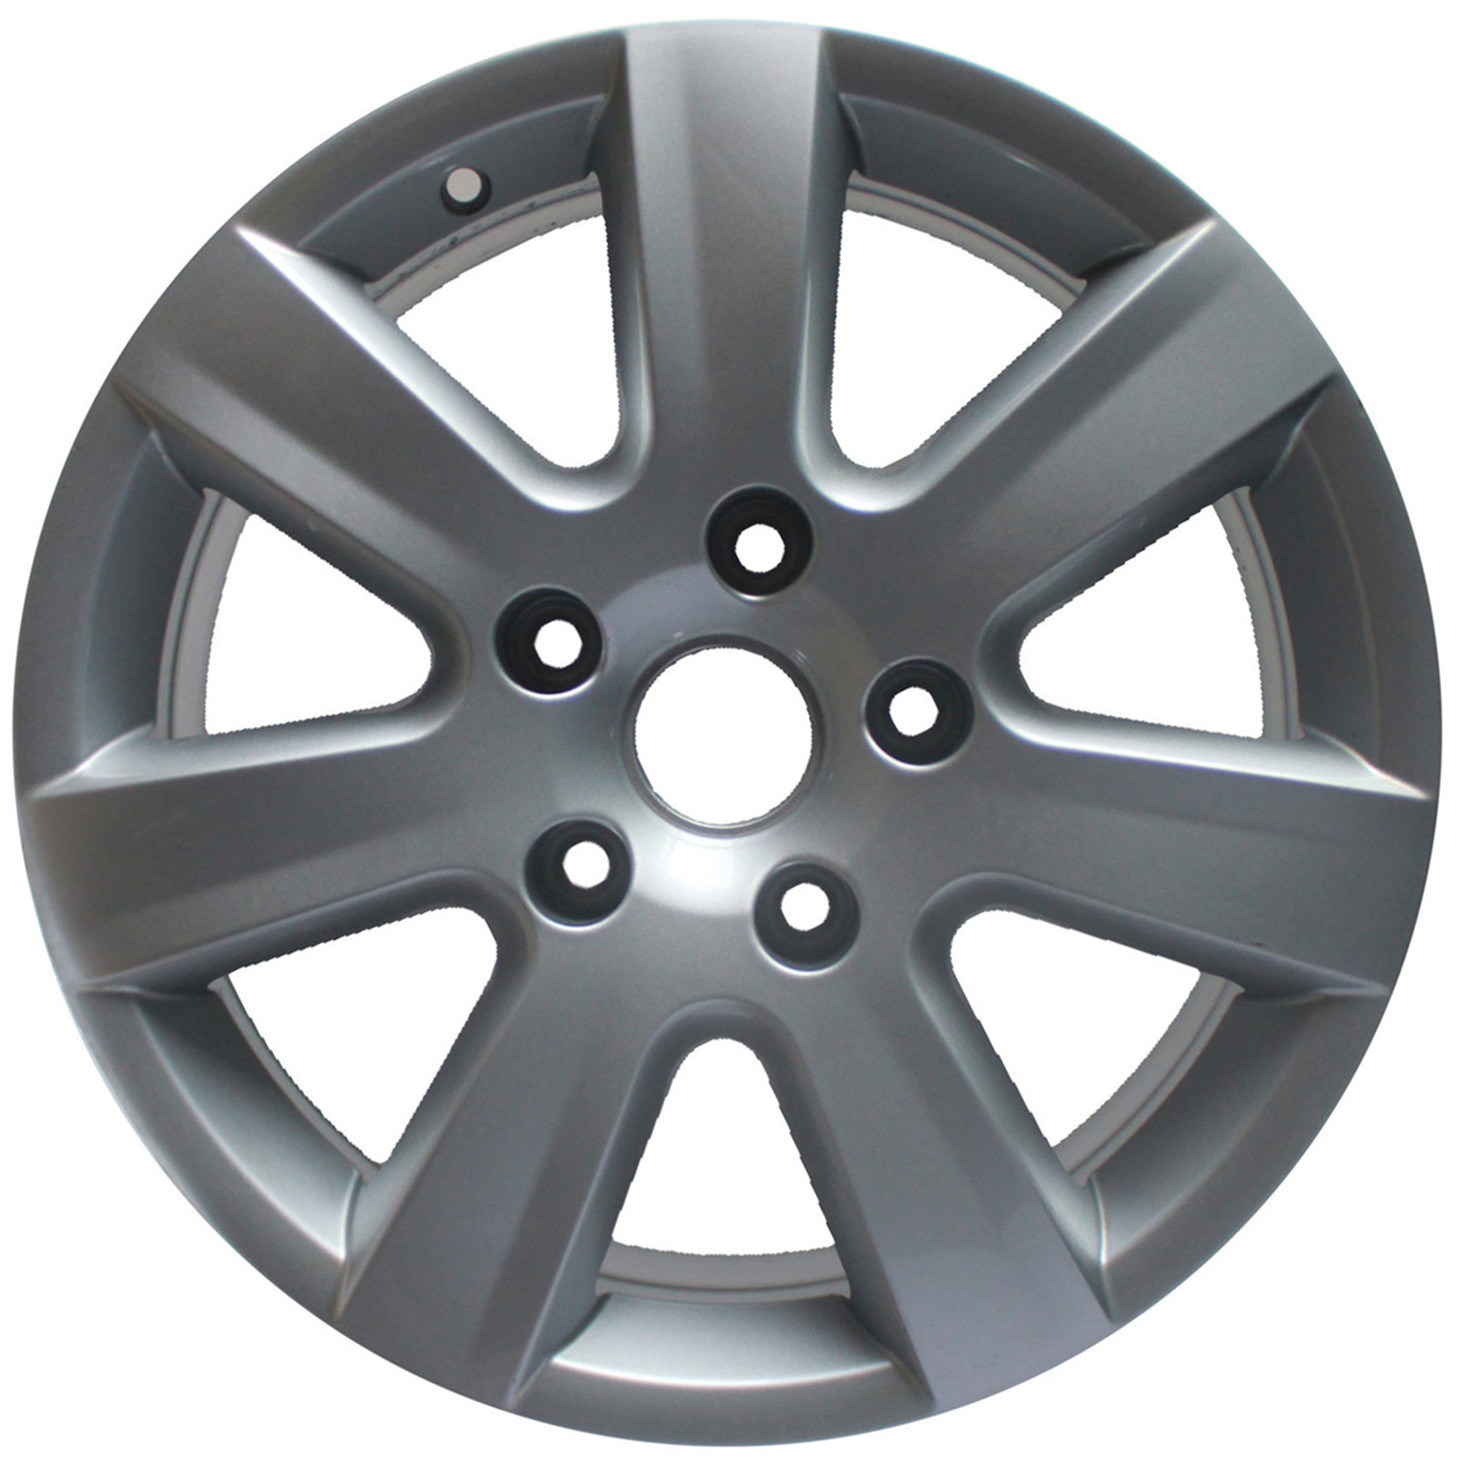 17 Inch Replica Silver Auto Parts 5 Hole 6 Spokes Alloy Wheel Rims for Volkswagen